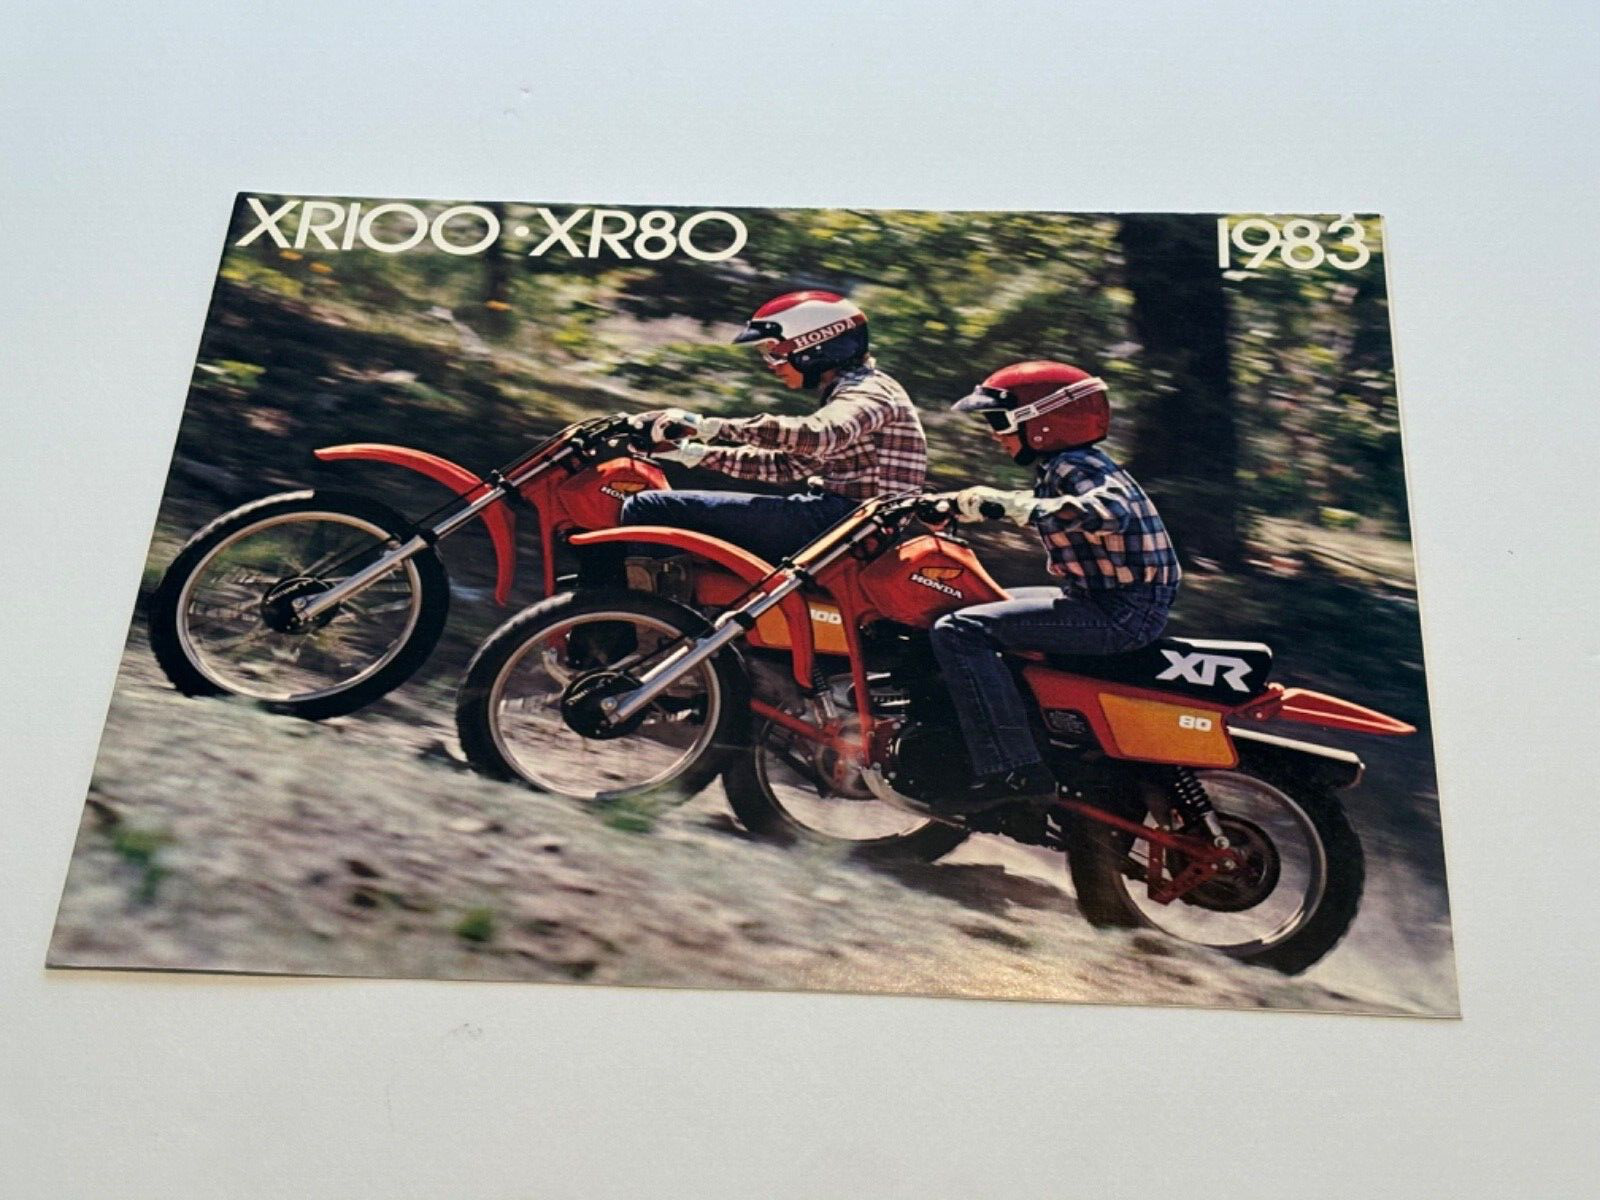 Original 1983 Honda XR100-XR80 Motorcycle  Dealer Sales Brochure